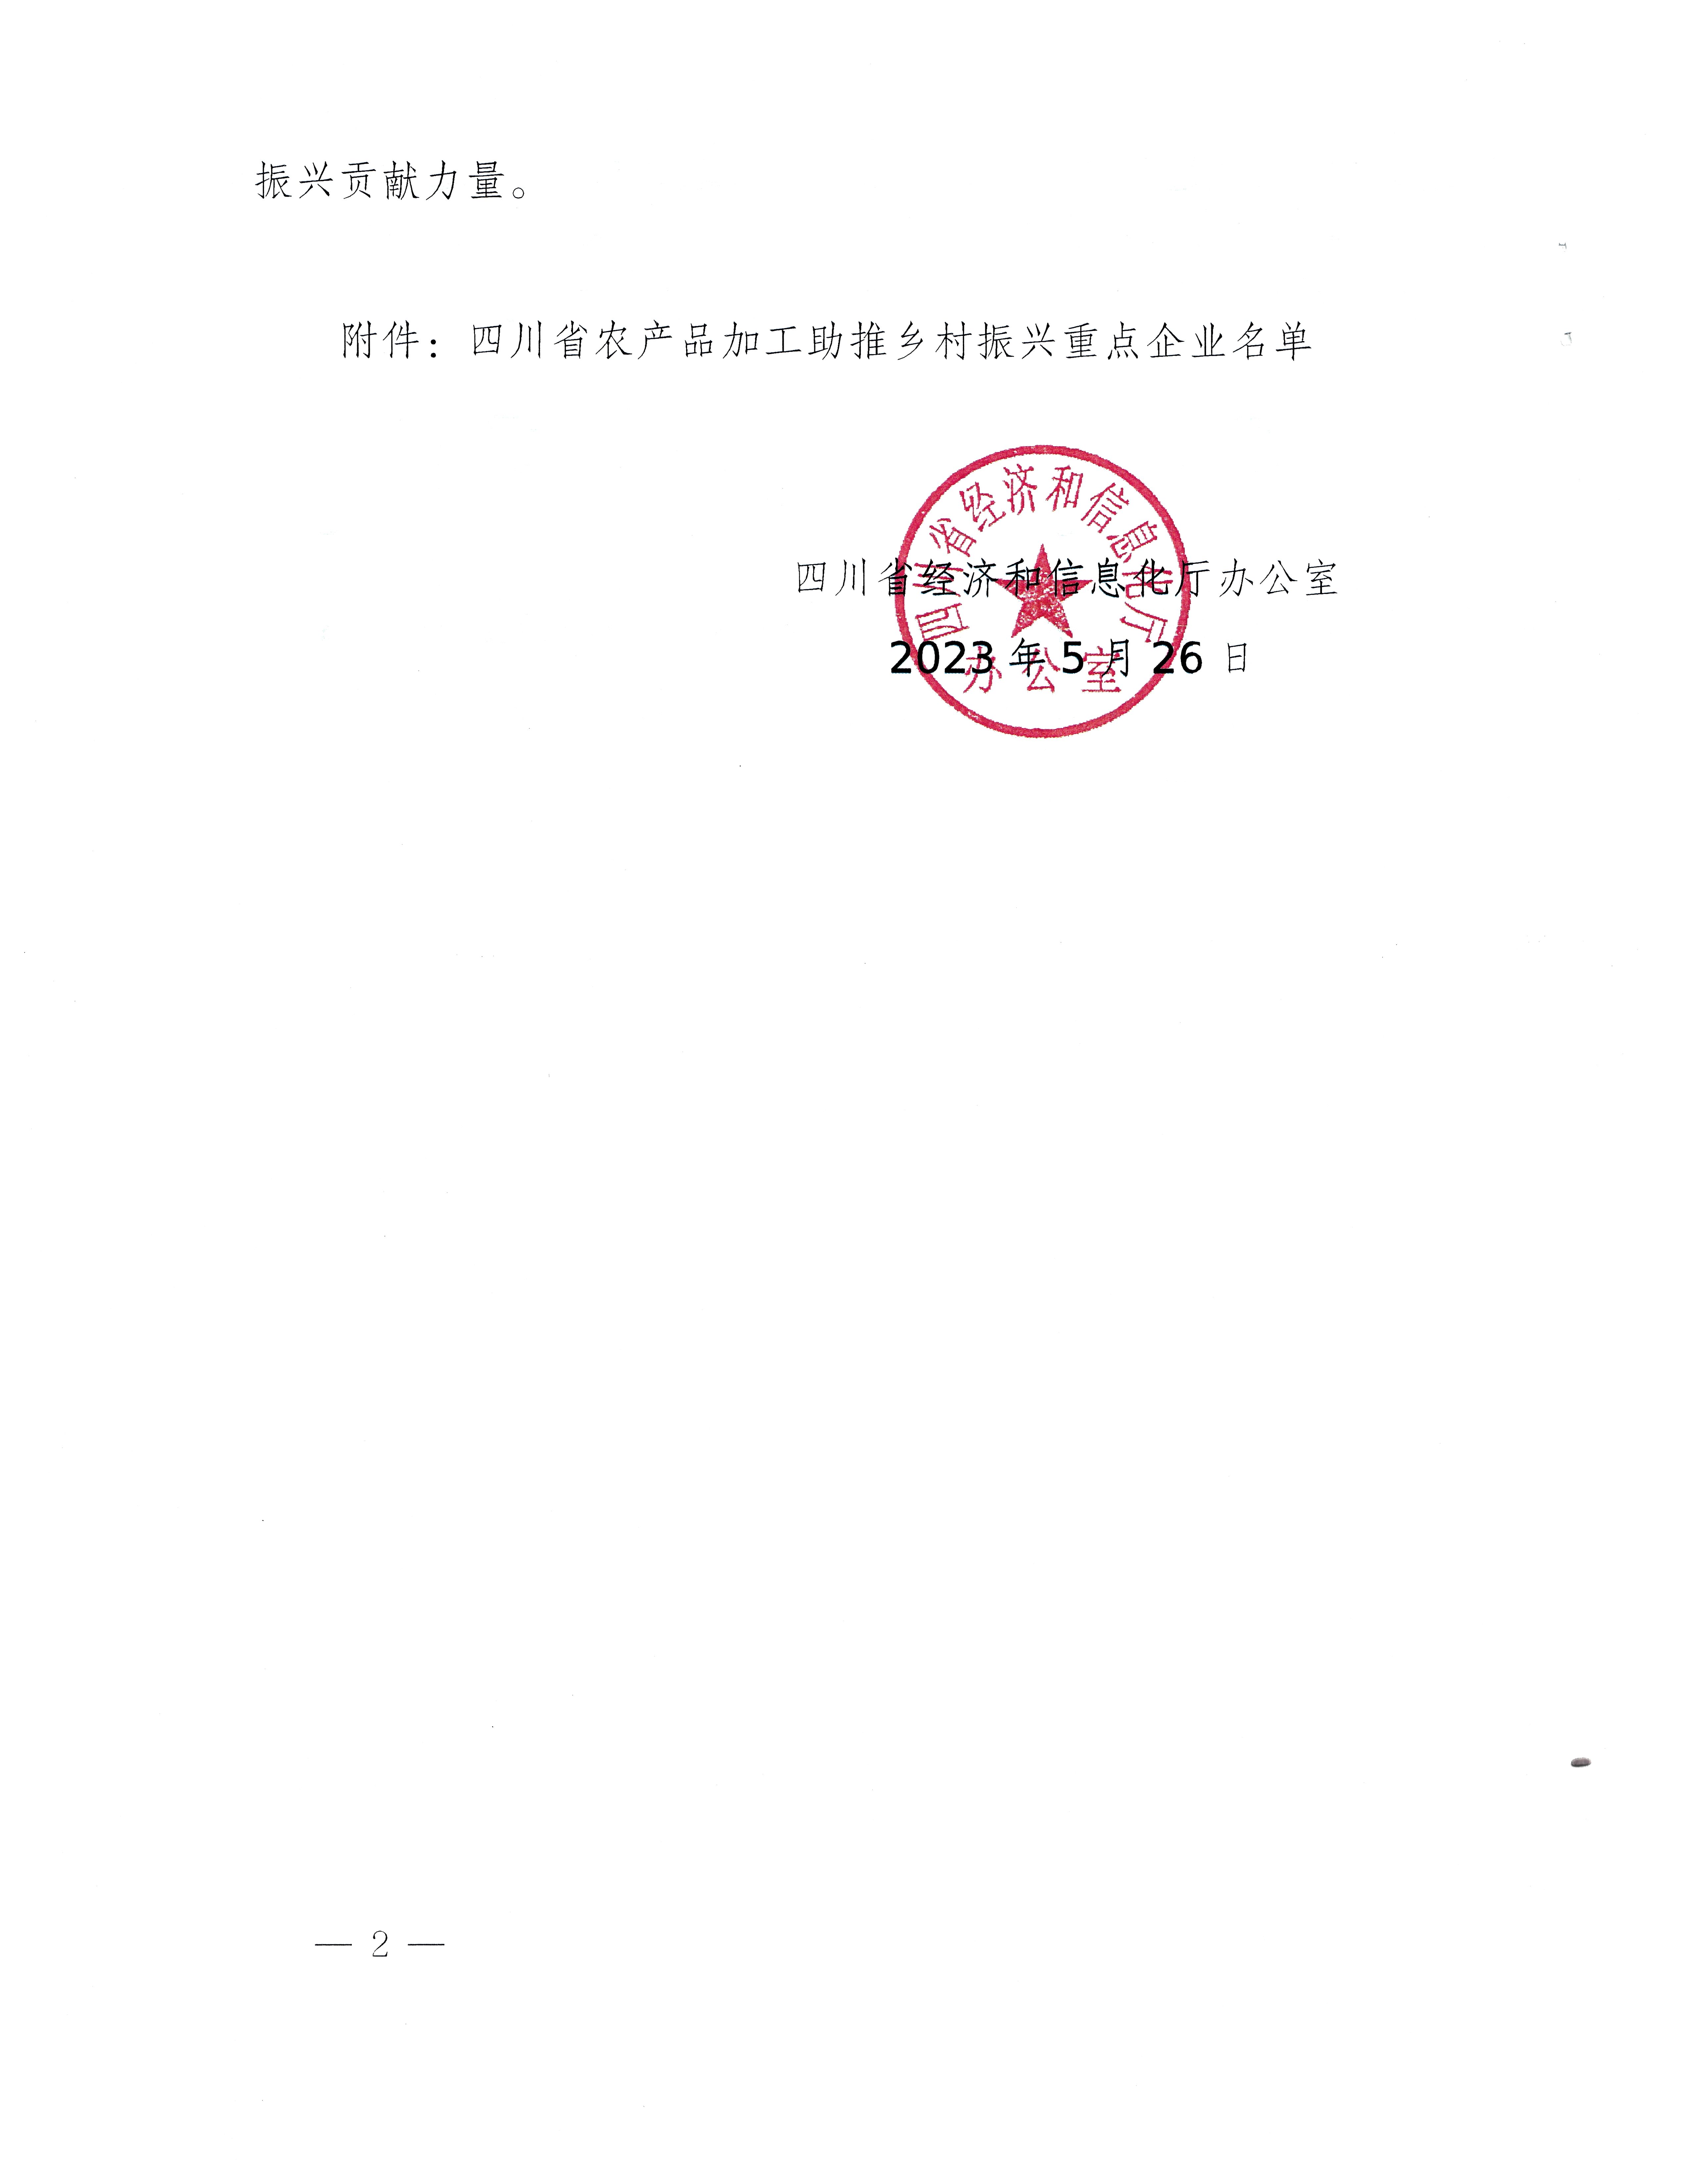 关于印发四川省农产品加工助推乡村振兴第一批重点企业名录的通知_页面_2.jpg